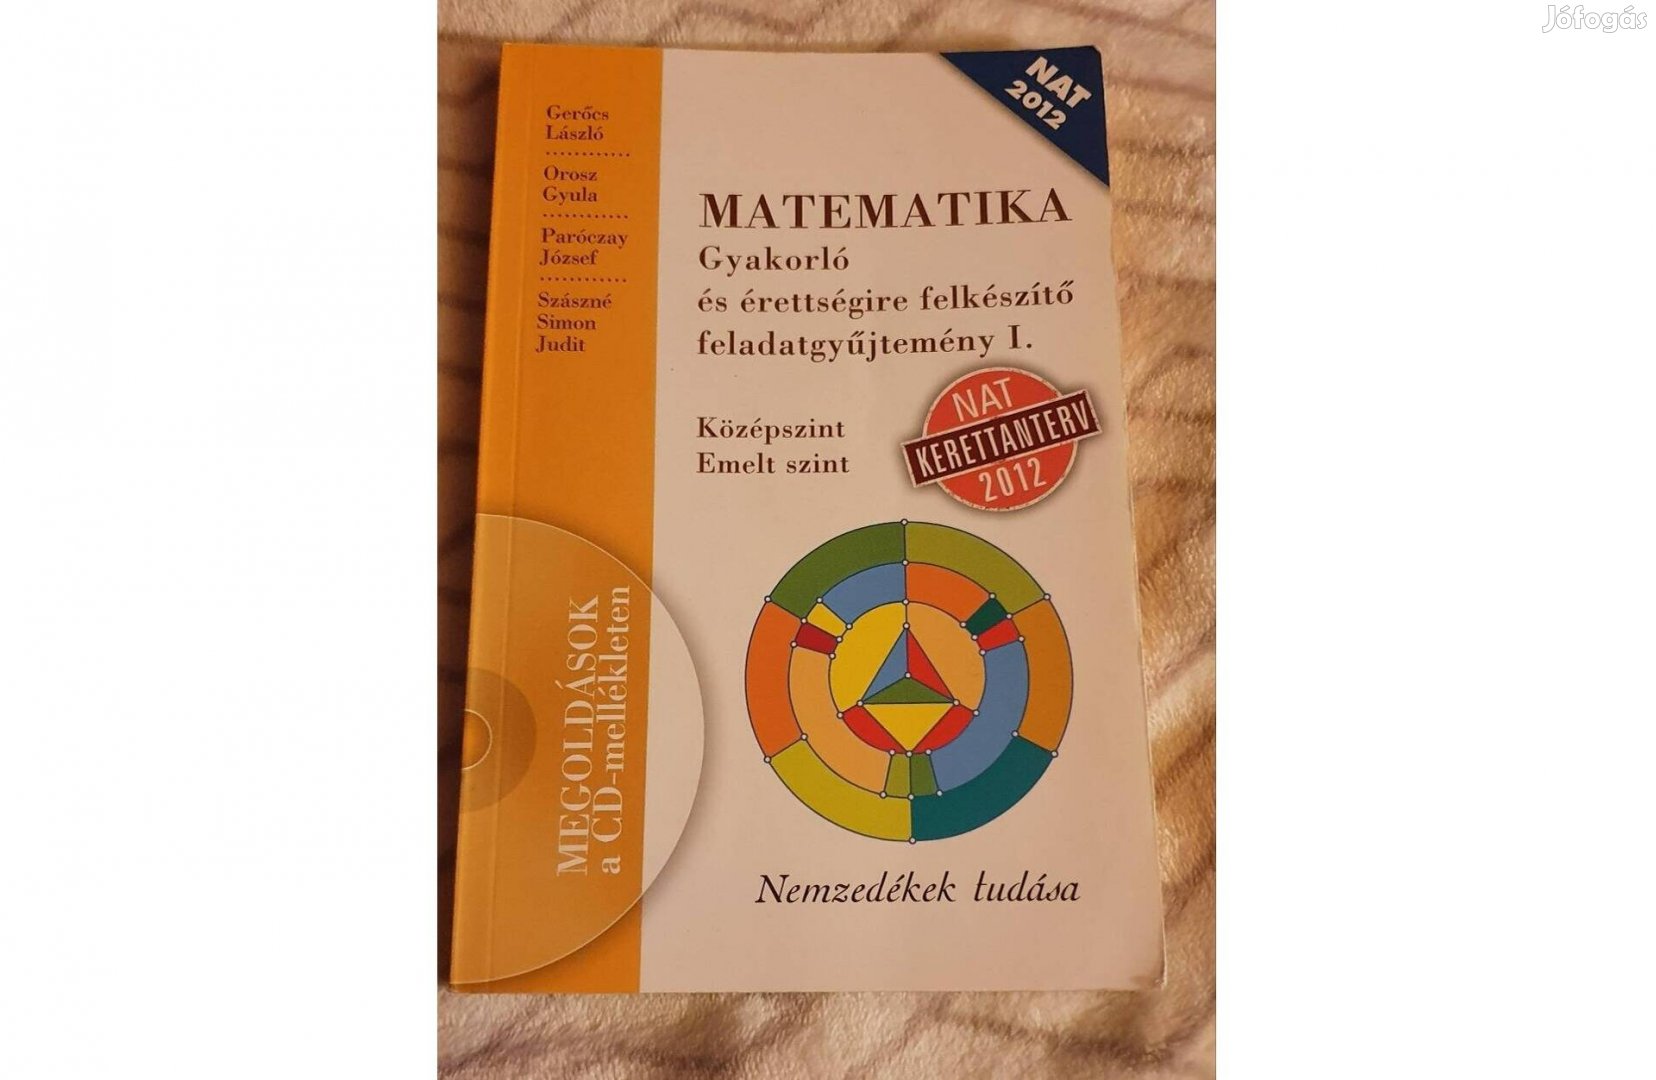 Matematika érettségire felkészítő feladatgyűjtemány I. II. III